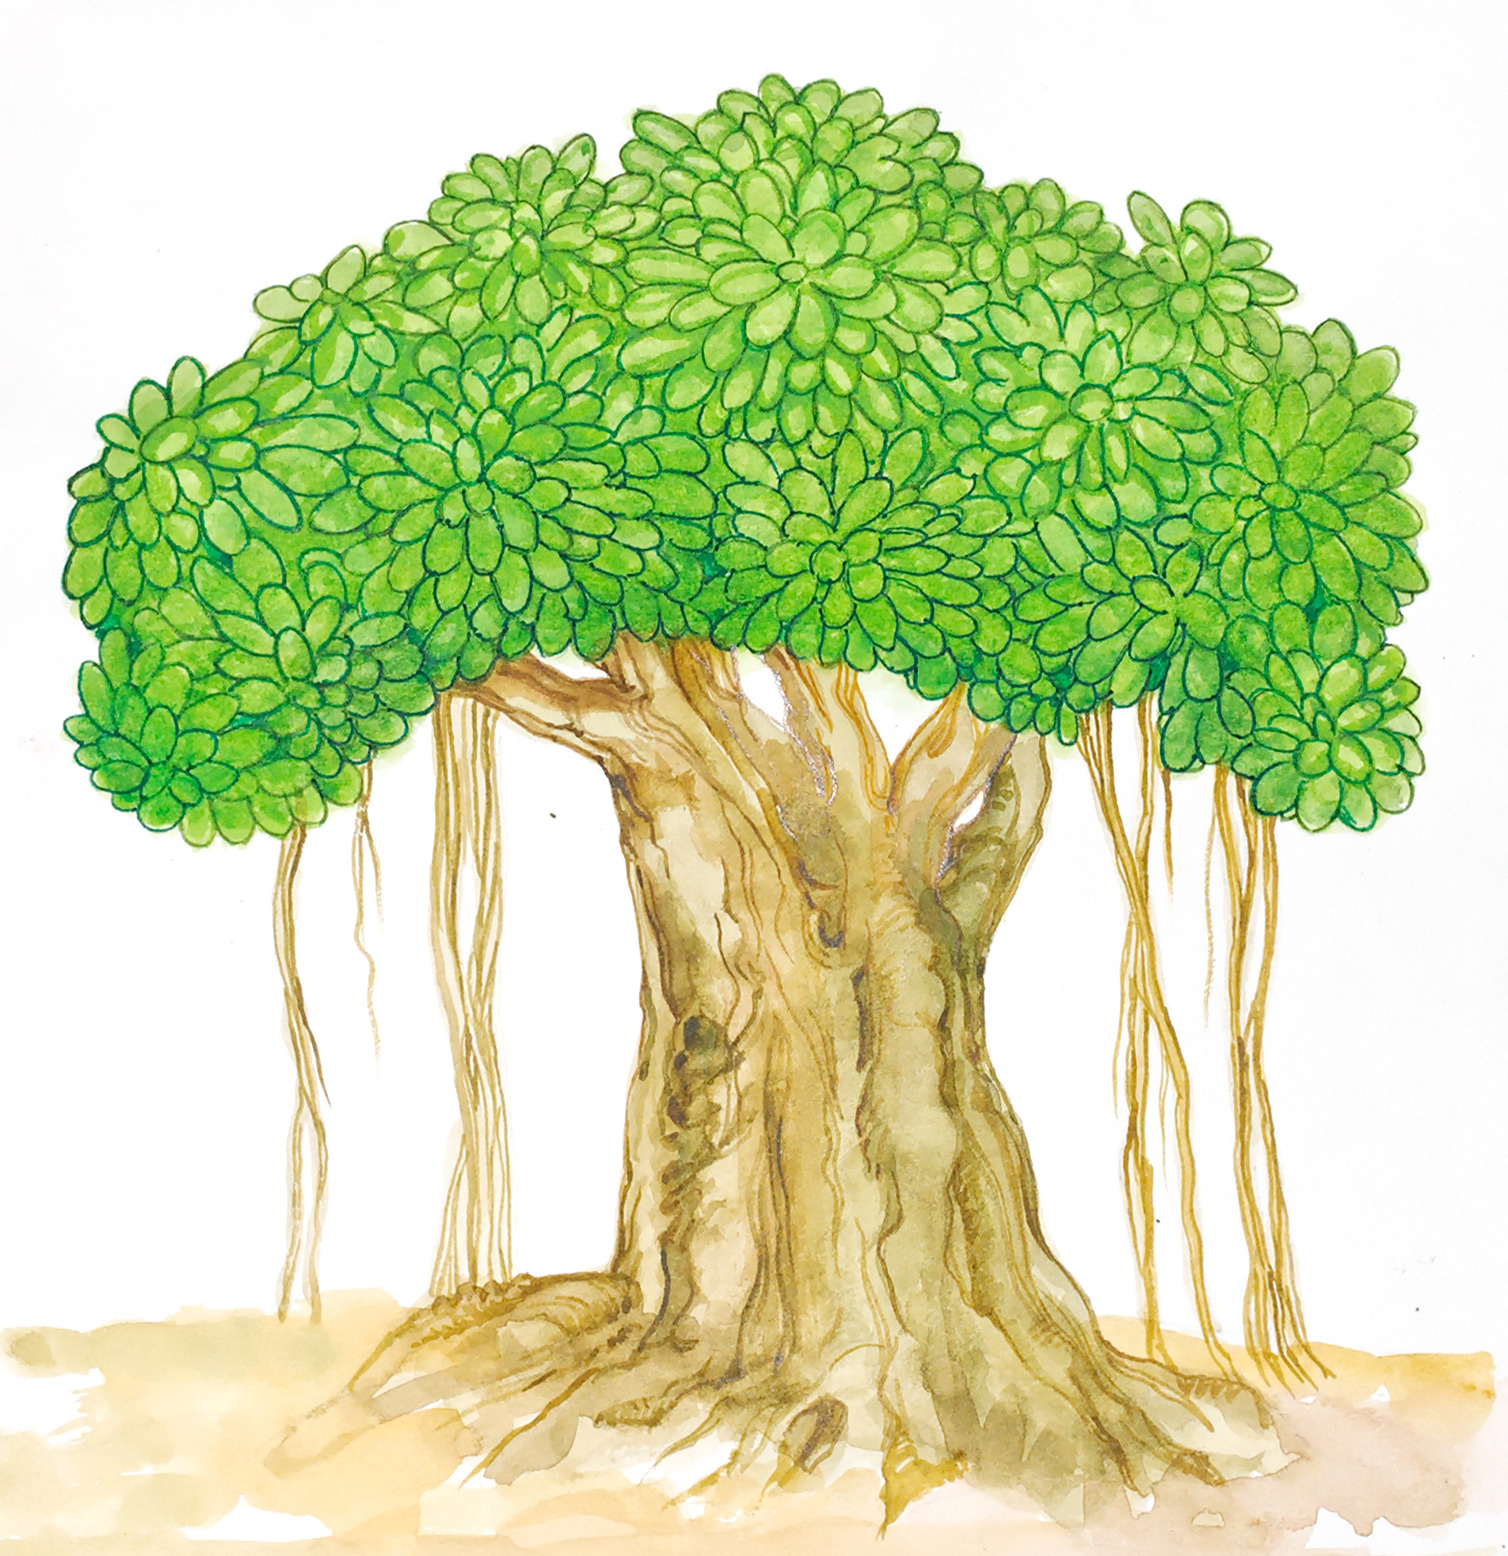 FileBanyan tree PSFpng  Wikimedia Commons